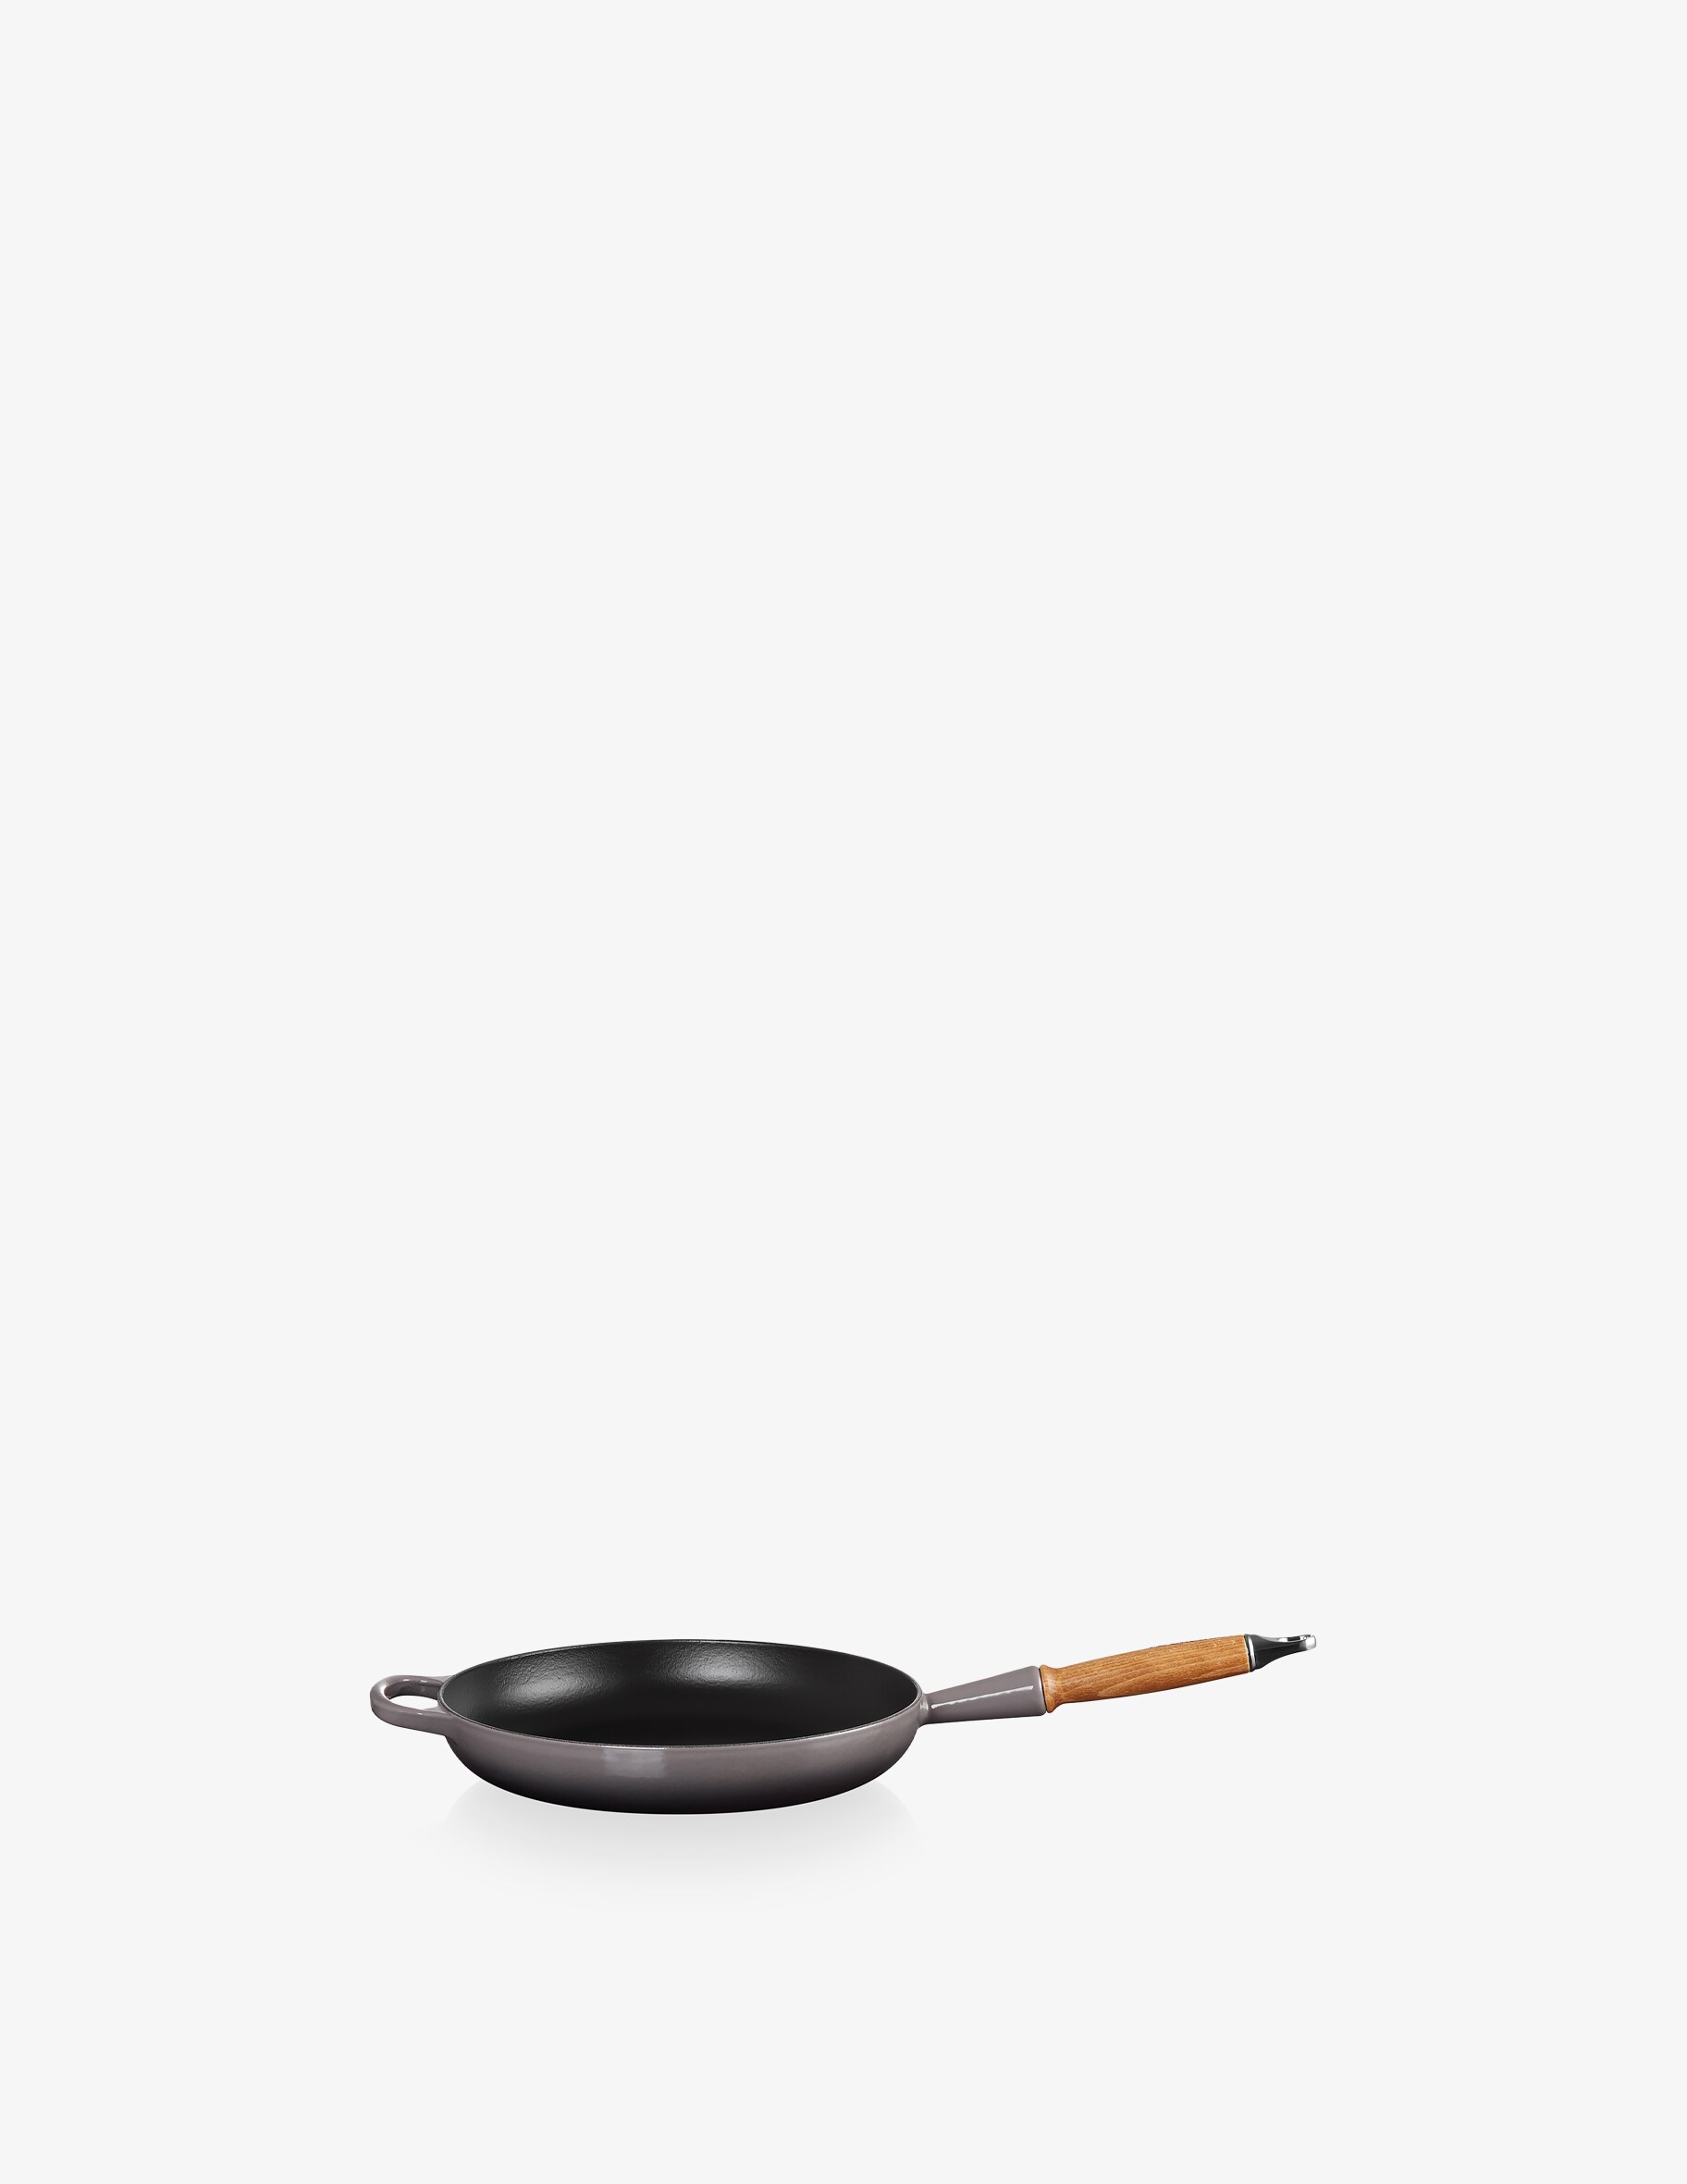 Фирменная сковорода с деревянной ручкой Le Creuset, цвет Flint набор прихваток для ручек le creuset silicone 2 шт силикон черный